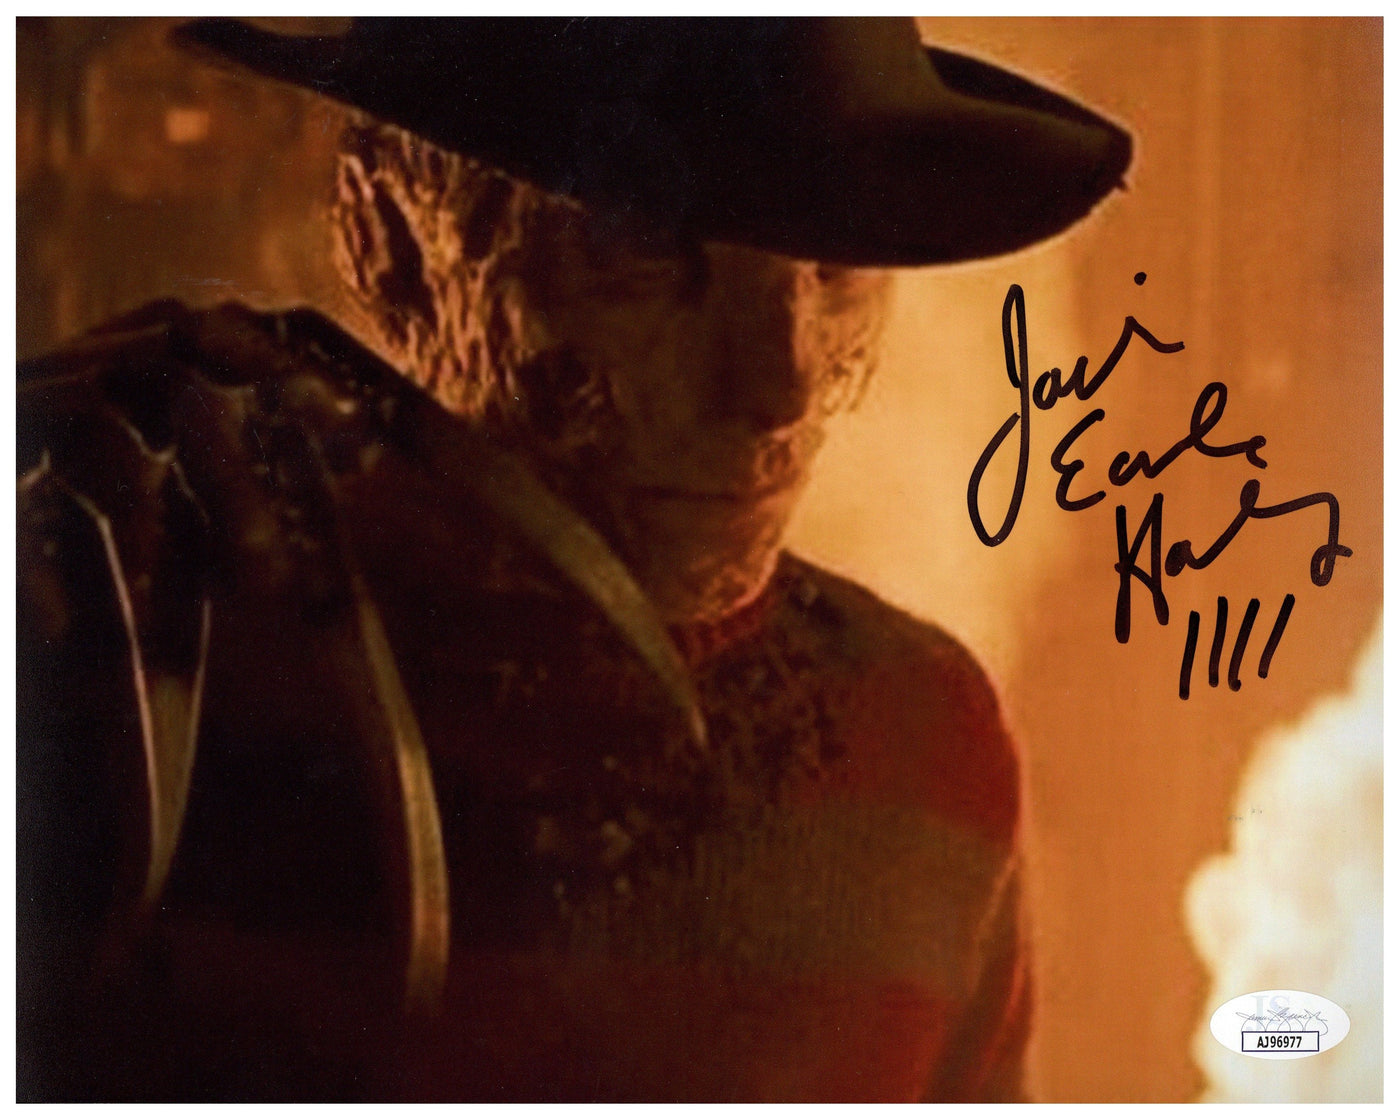 Jackie Earle Haley Signed 8x10 Photo A Nightmare on Elm Street Autographed JSA COA